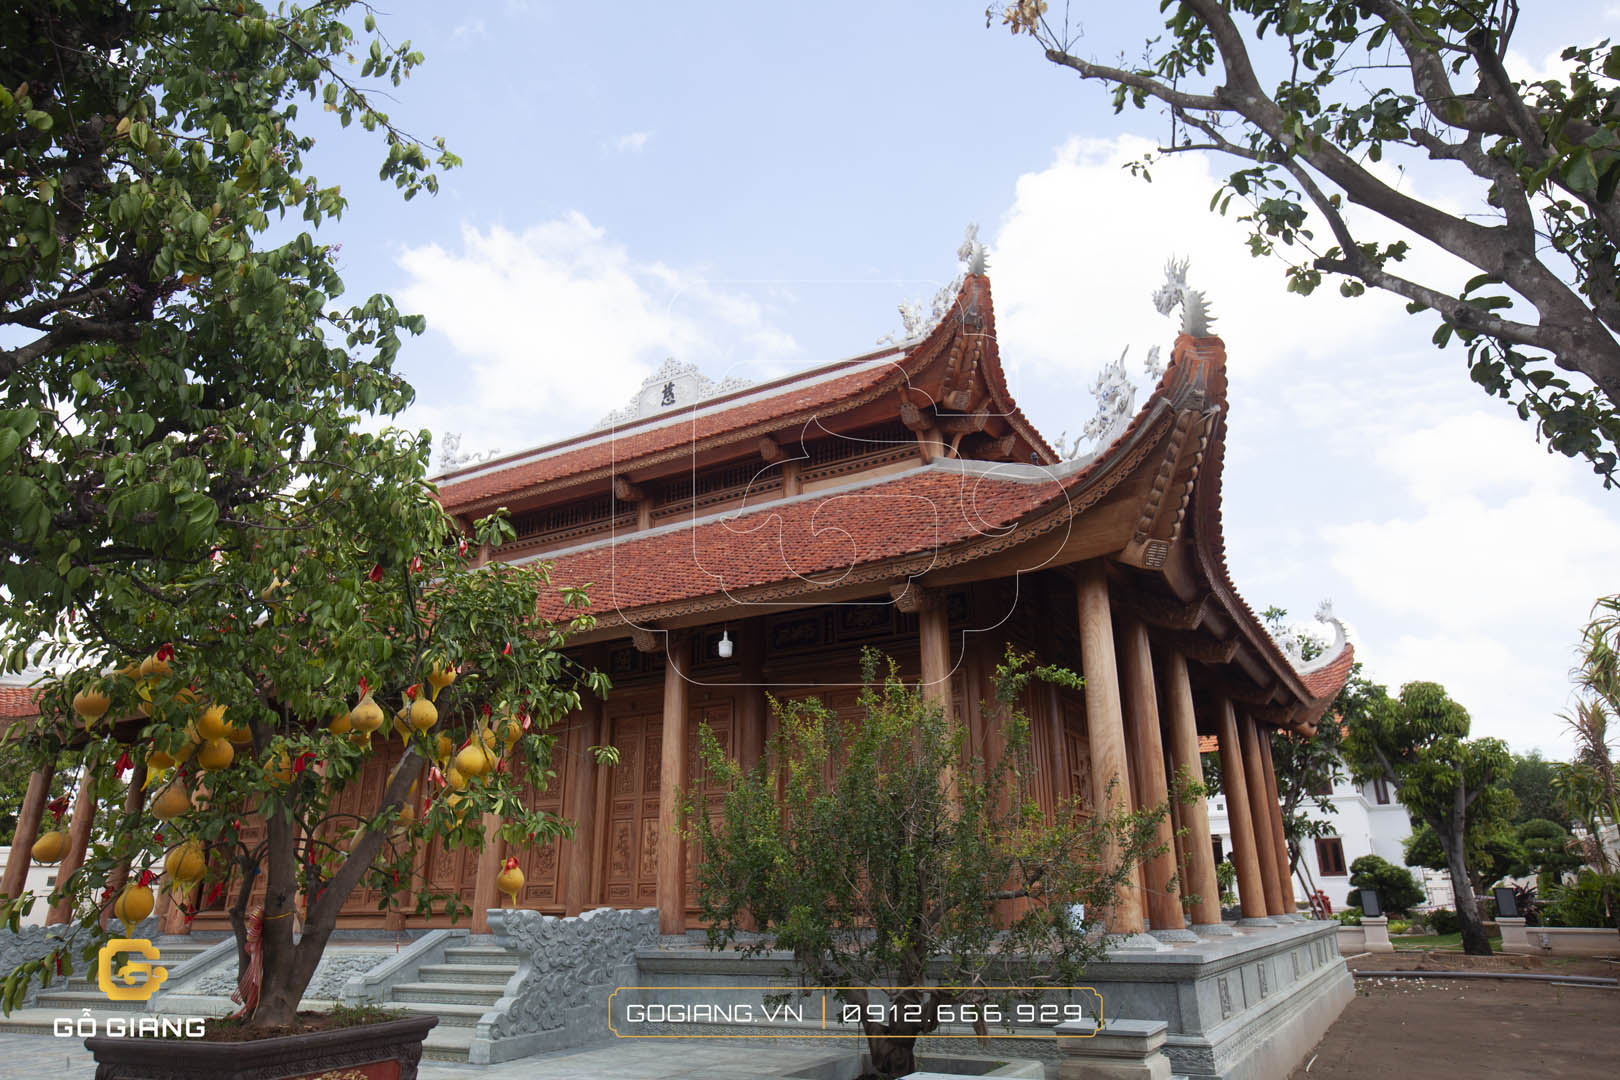 Chiêm ngưỡng vẻ đẹp của nhà từ đường gia tộc tại Đồng Nai